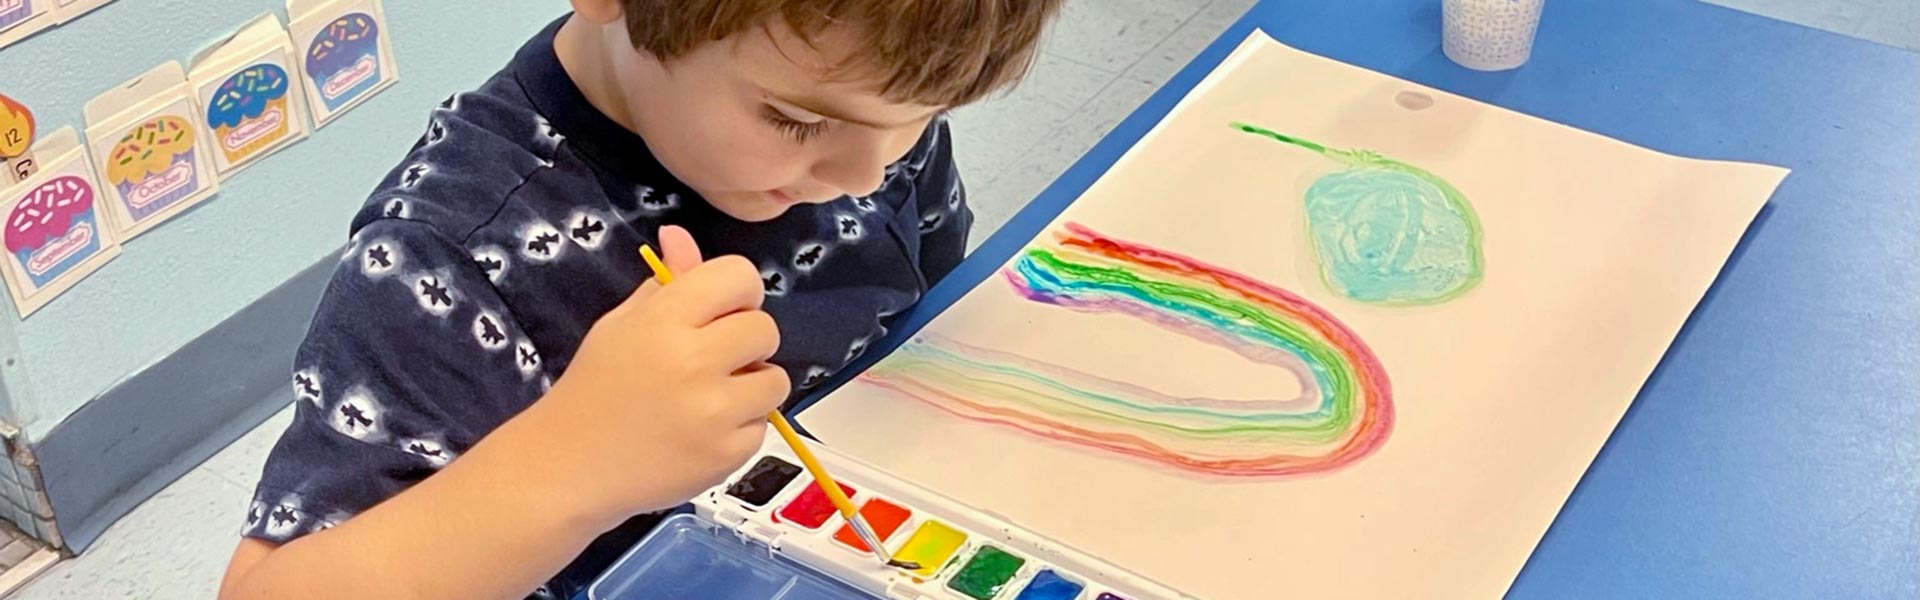 little boy painting a rainbow